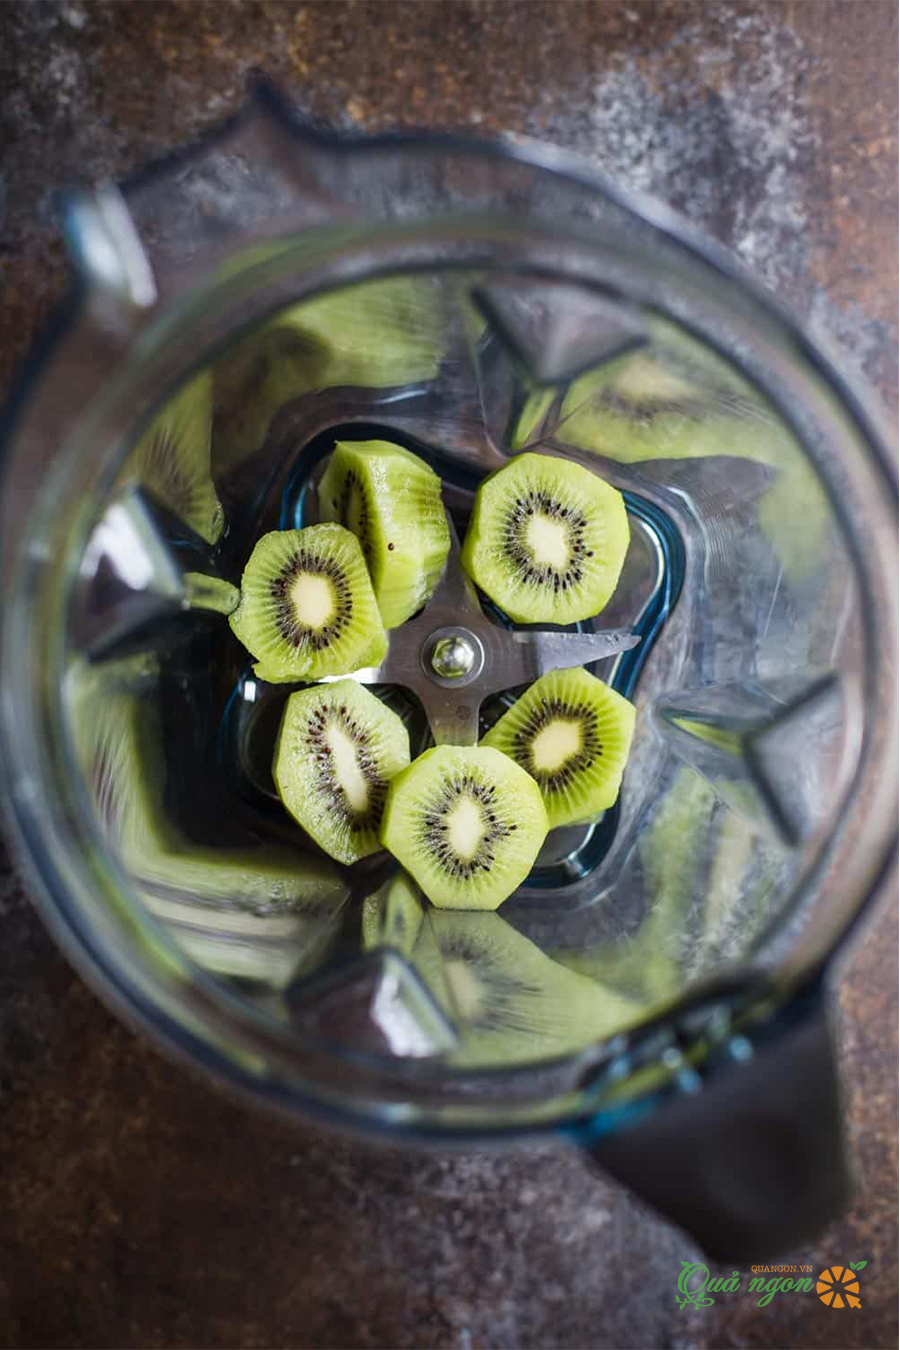 gọt vỏ kiwi và cắt thành từng khoanh, cho vào máy xay sinh tố